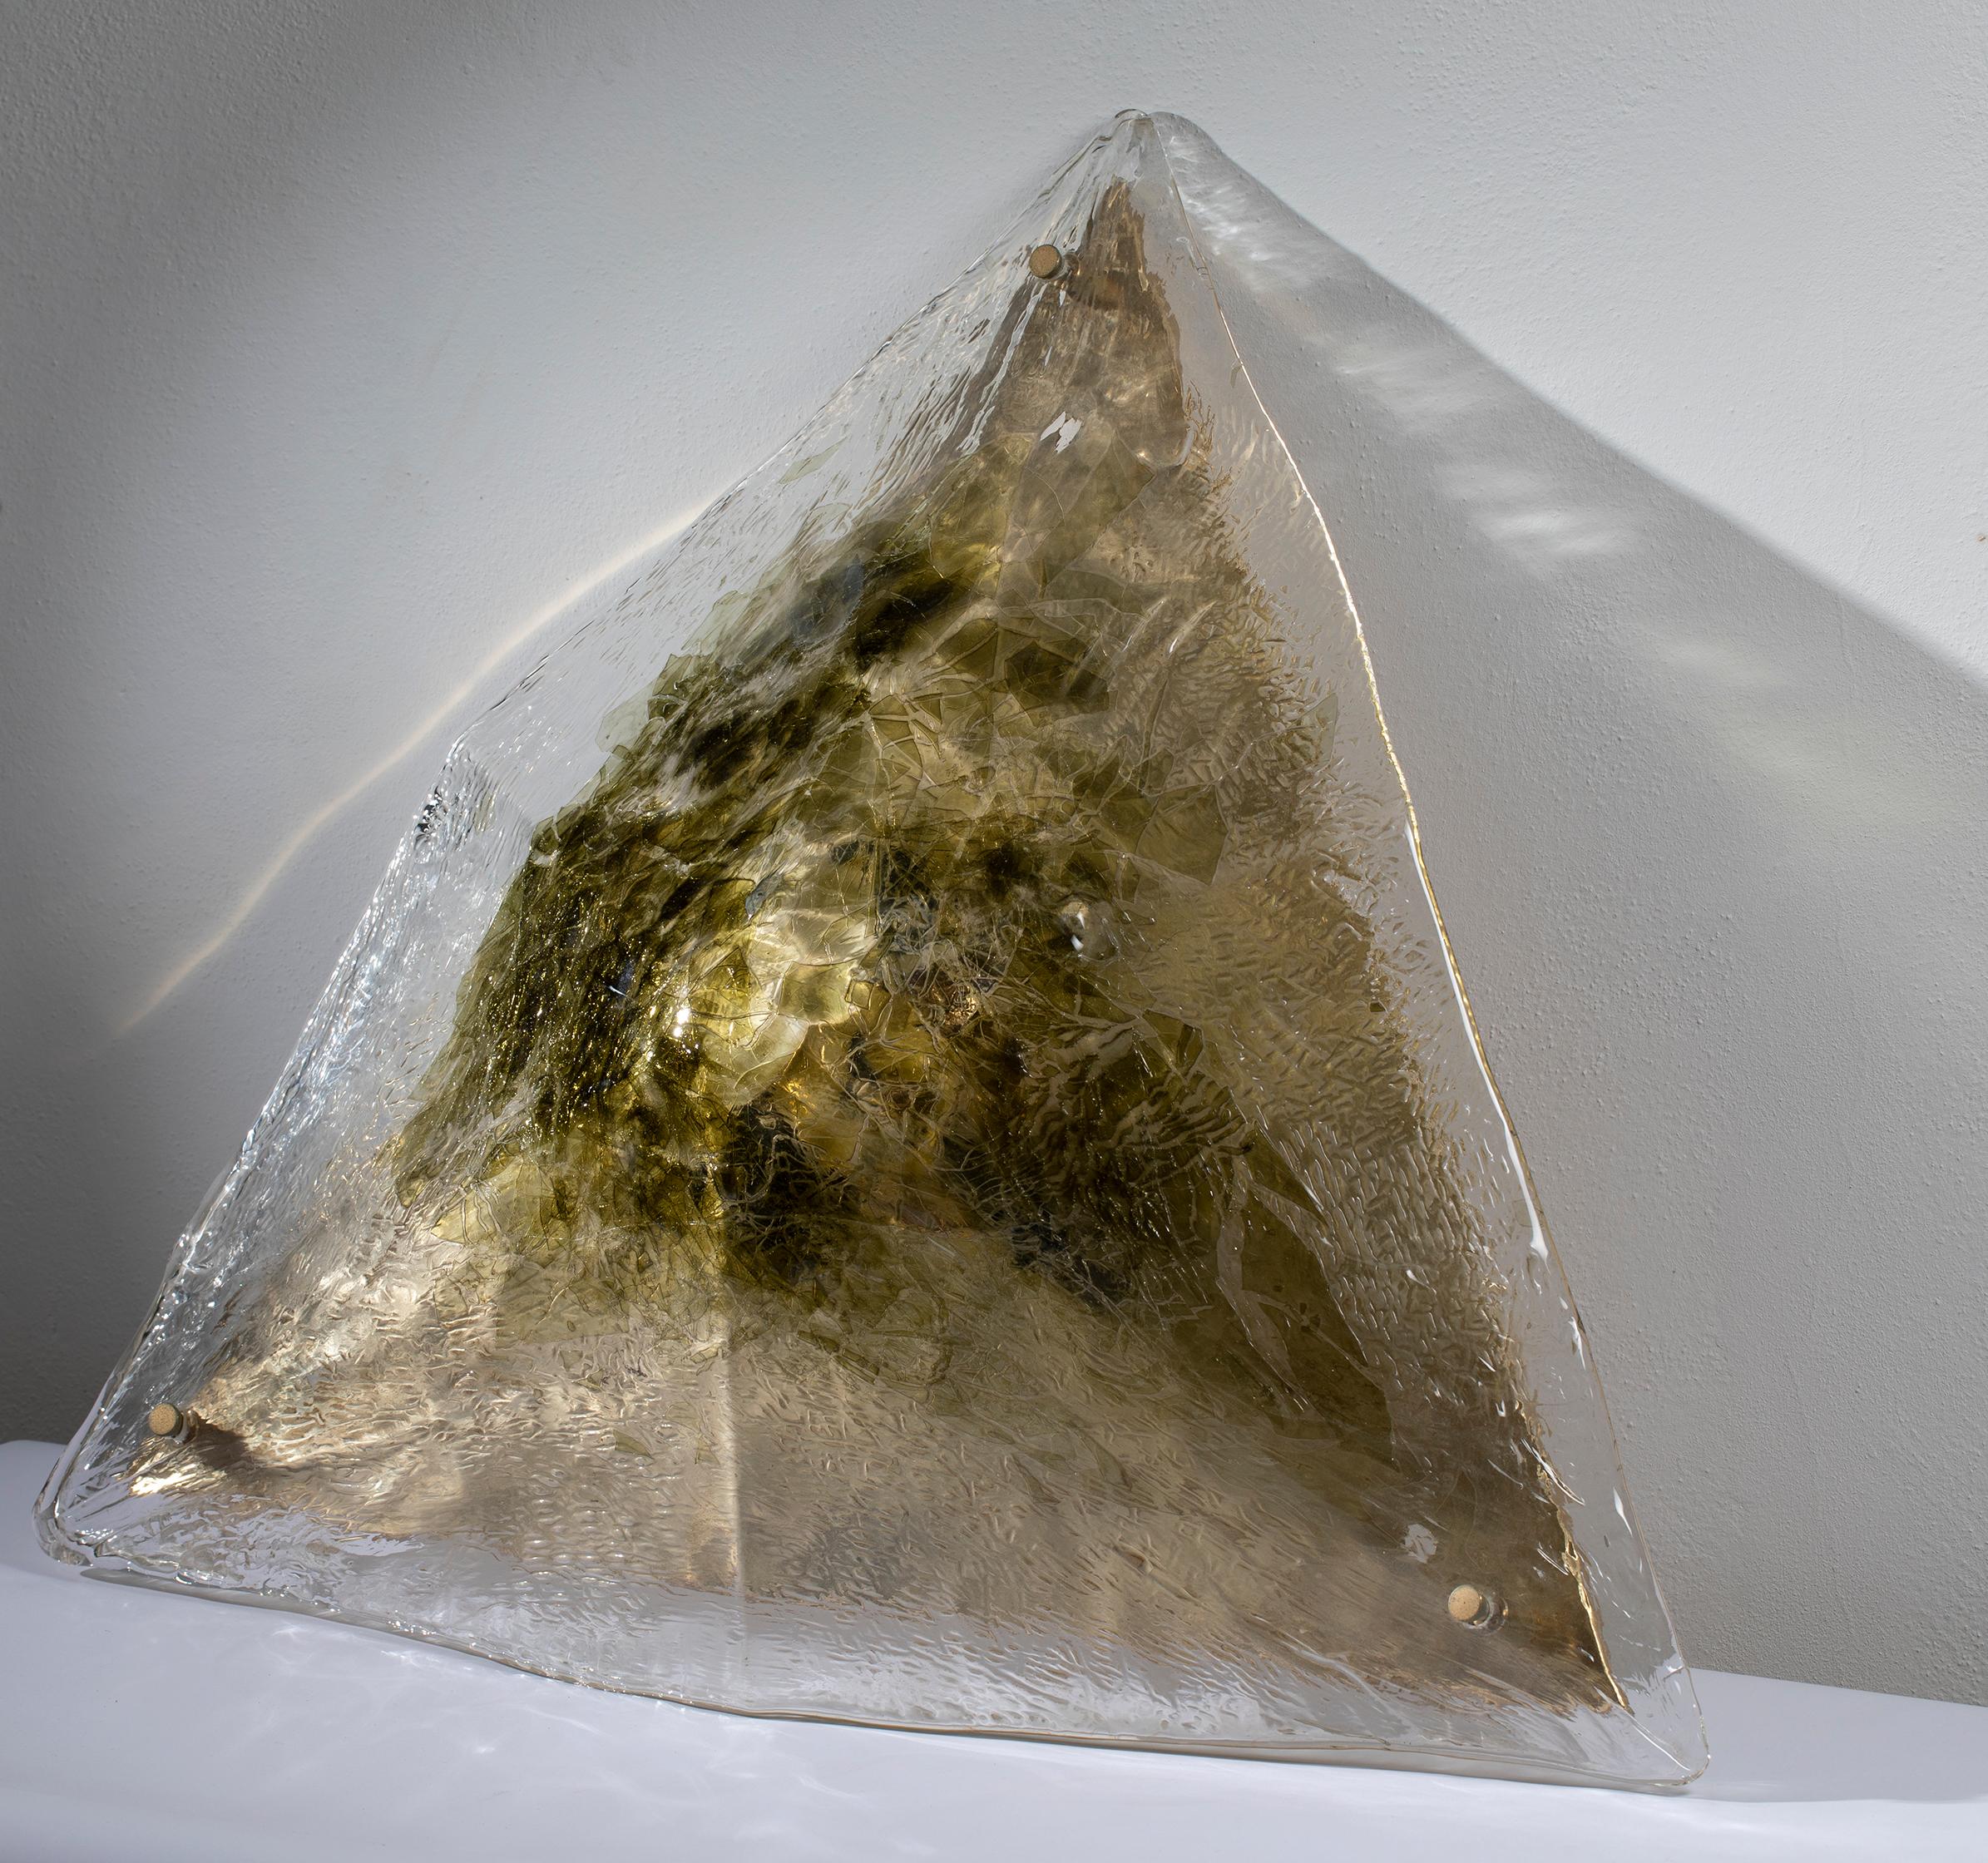 Grande plafoniera a forma piramidale, prodotta da La Murrina negli anni 70, in vetro di Murano con inclusioni nei toni del verde e del giallo ambra. L’attacco al soffitto è una grande piastra in ottone, visibile in foto. L’impianto elettrico è coevo